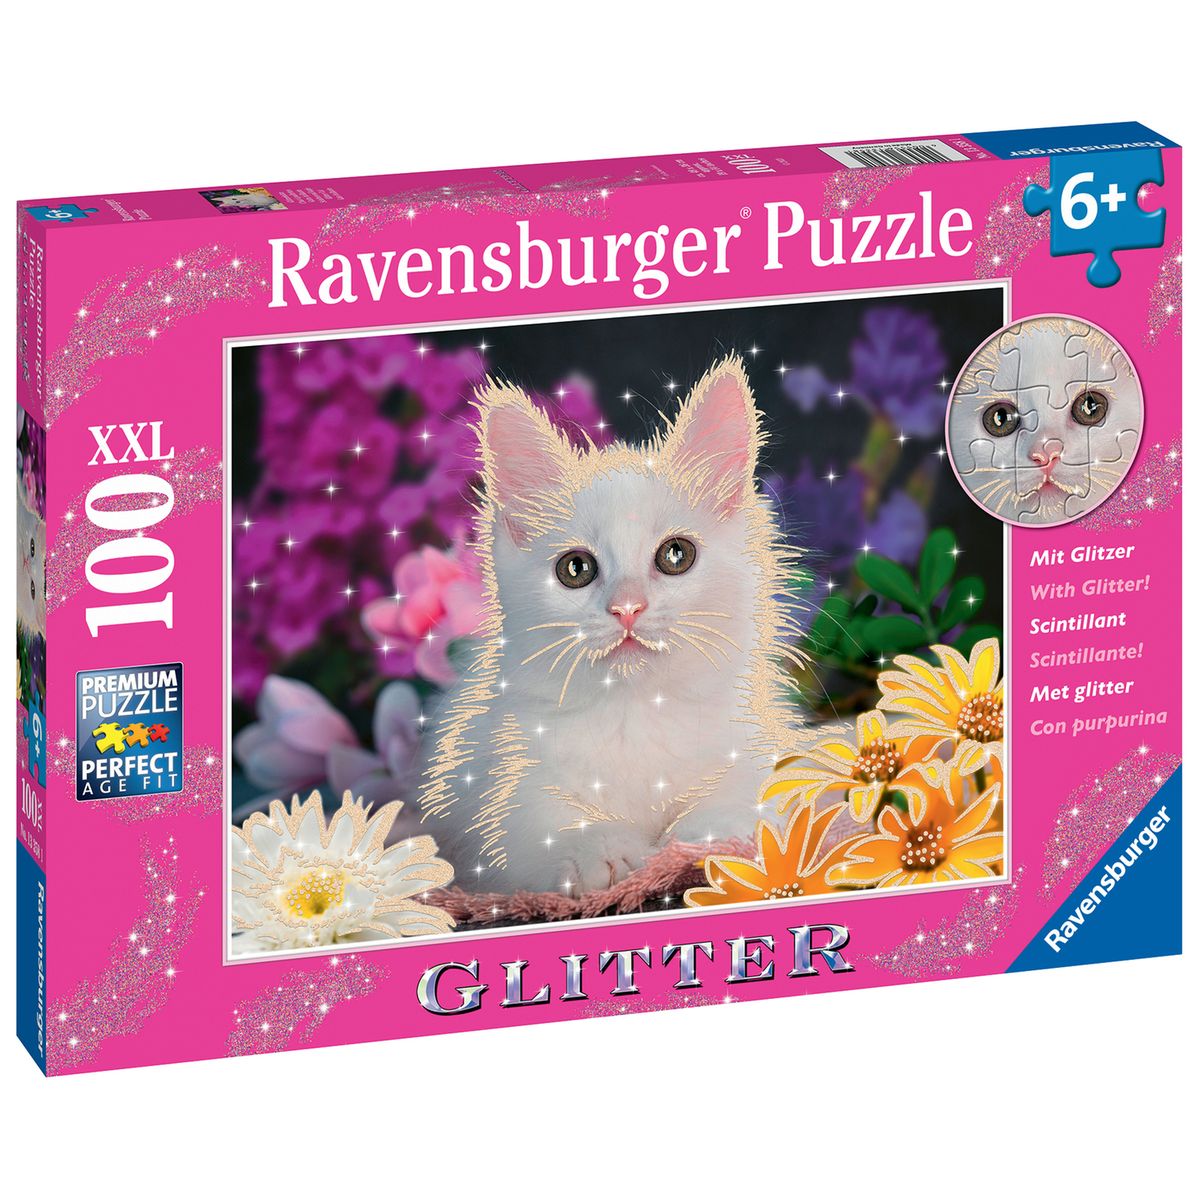 Ravensburger - Puzzle Adulte - Puzzle 2000 pièces - Une plongée aux